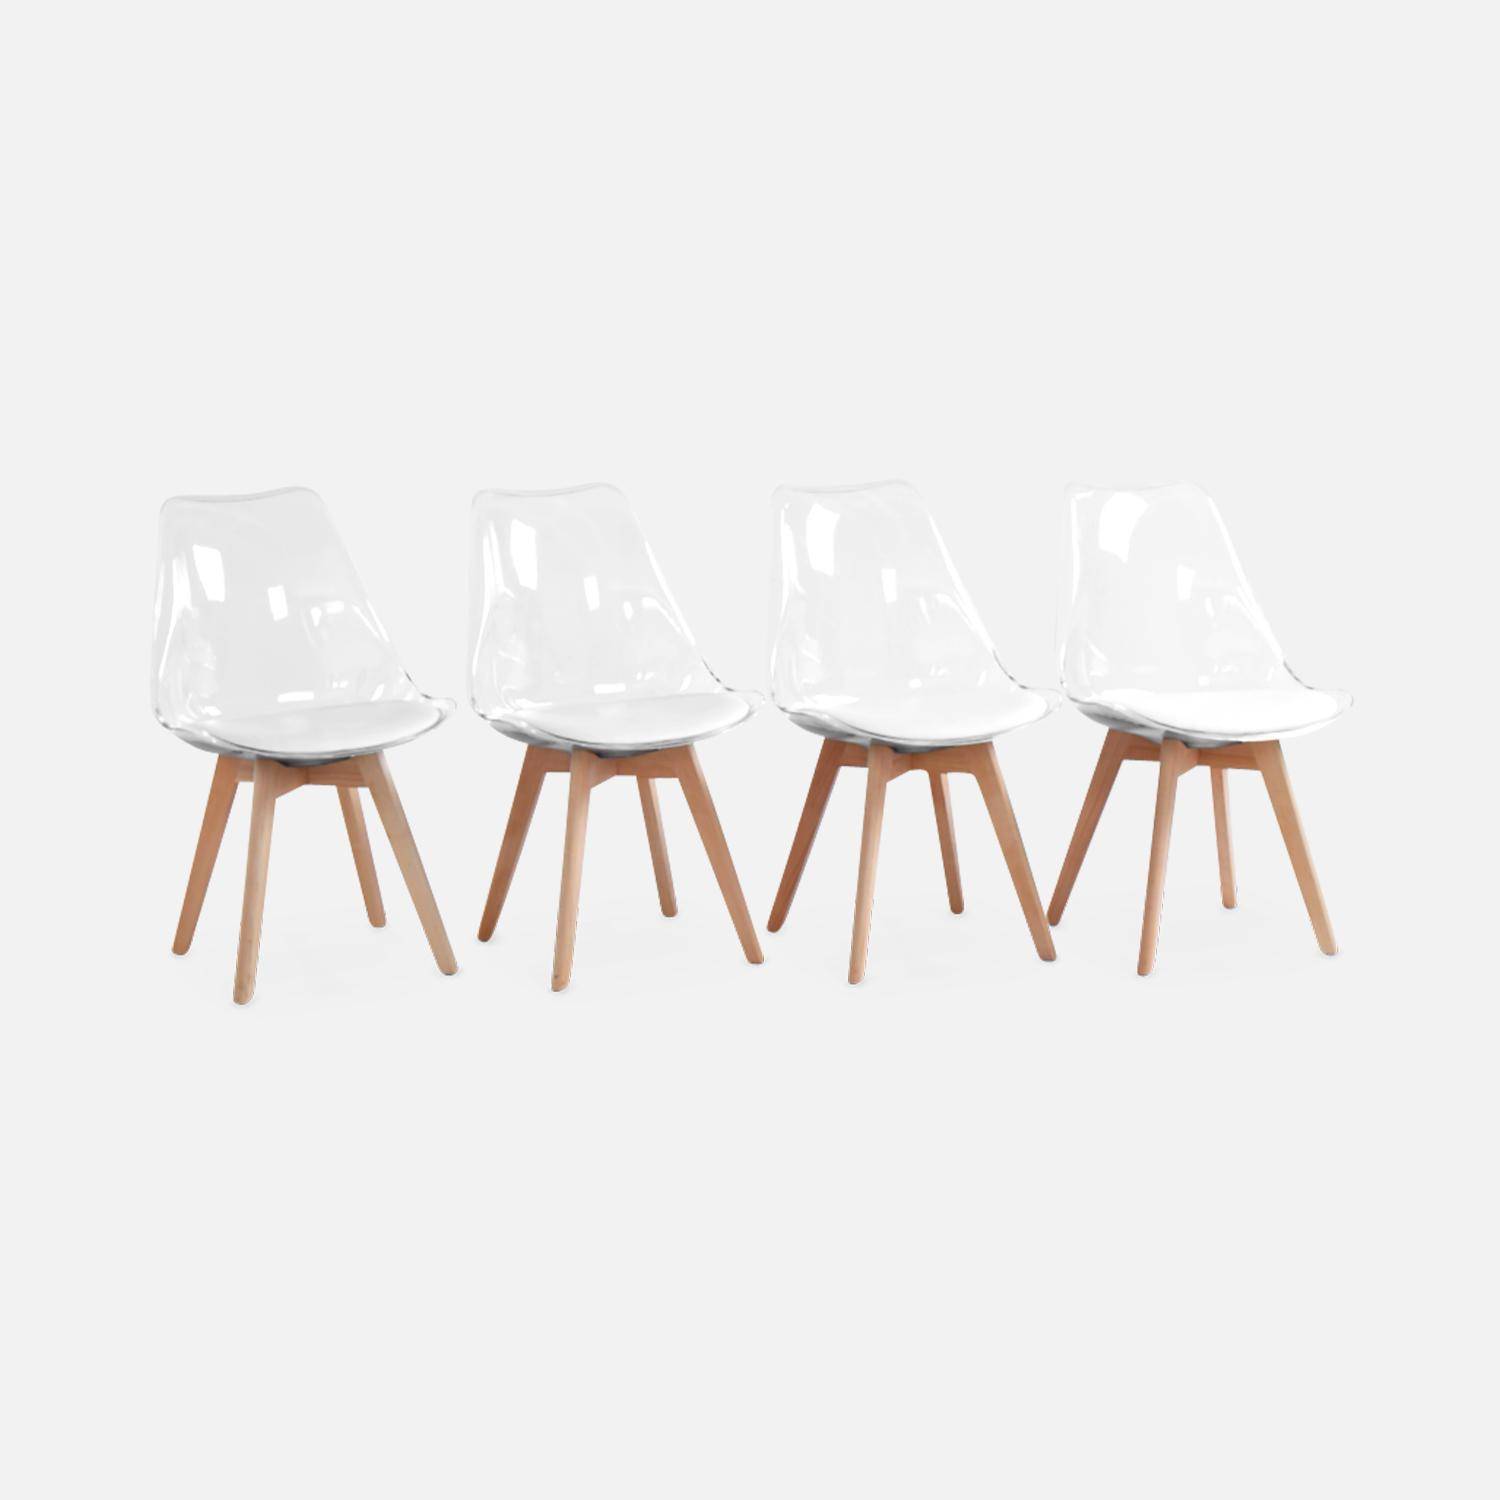 Juego de 4 sillas escandinavas - Lagertha - patas de madera, asientos individuales, cojín blanco, carcasa transparente  Photo3